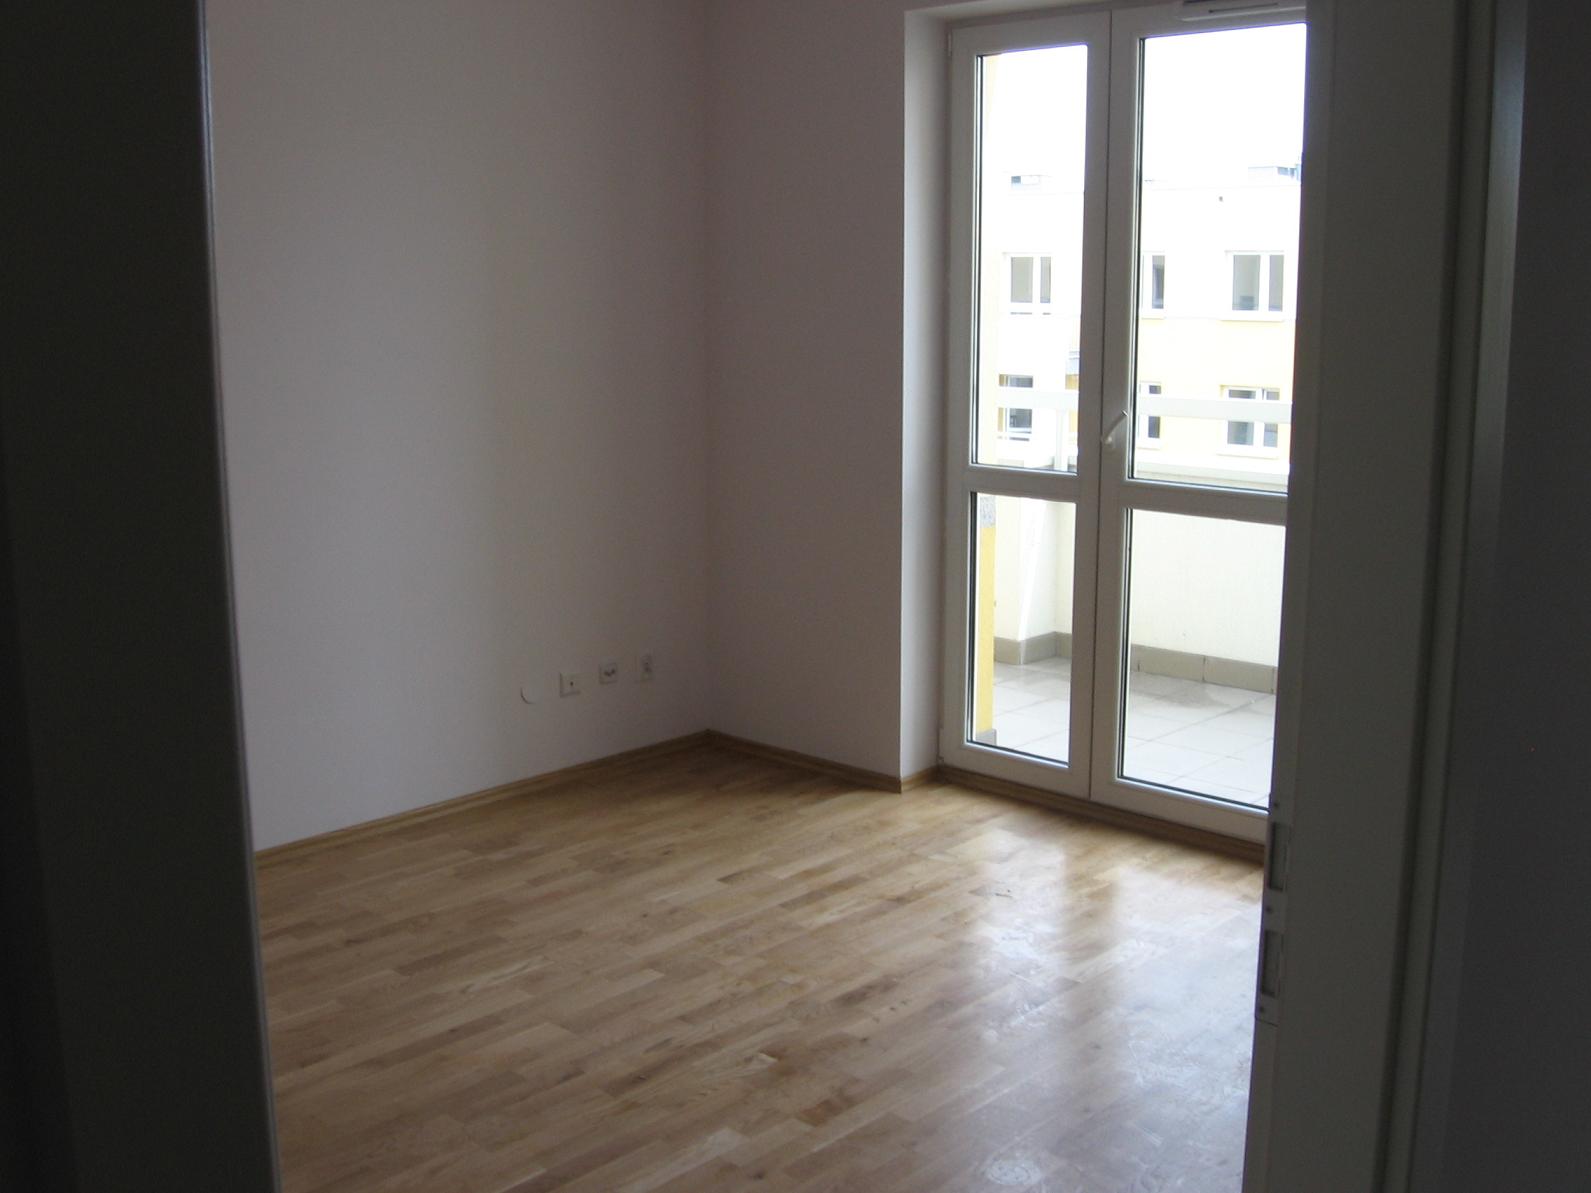 Zdjęcie do ogłoszenia Pokój 2-osobowy w nowym mieszkaniu kolo Geant (900 zl /2 os)